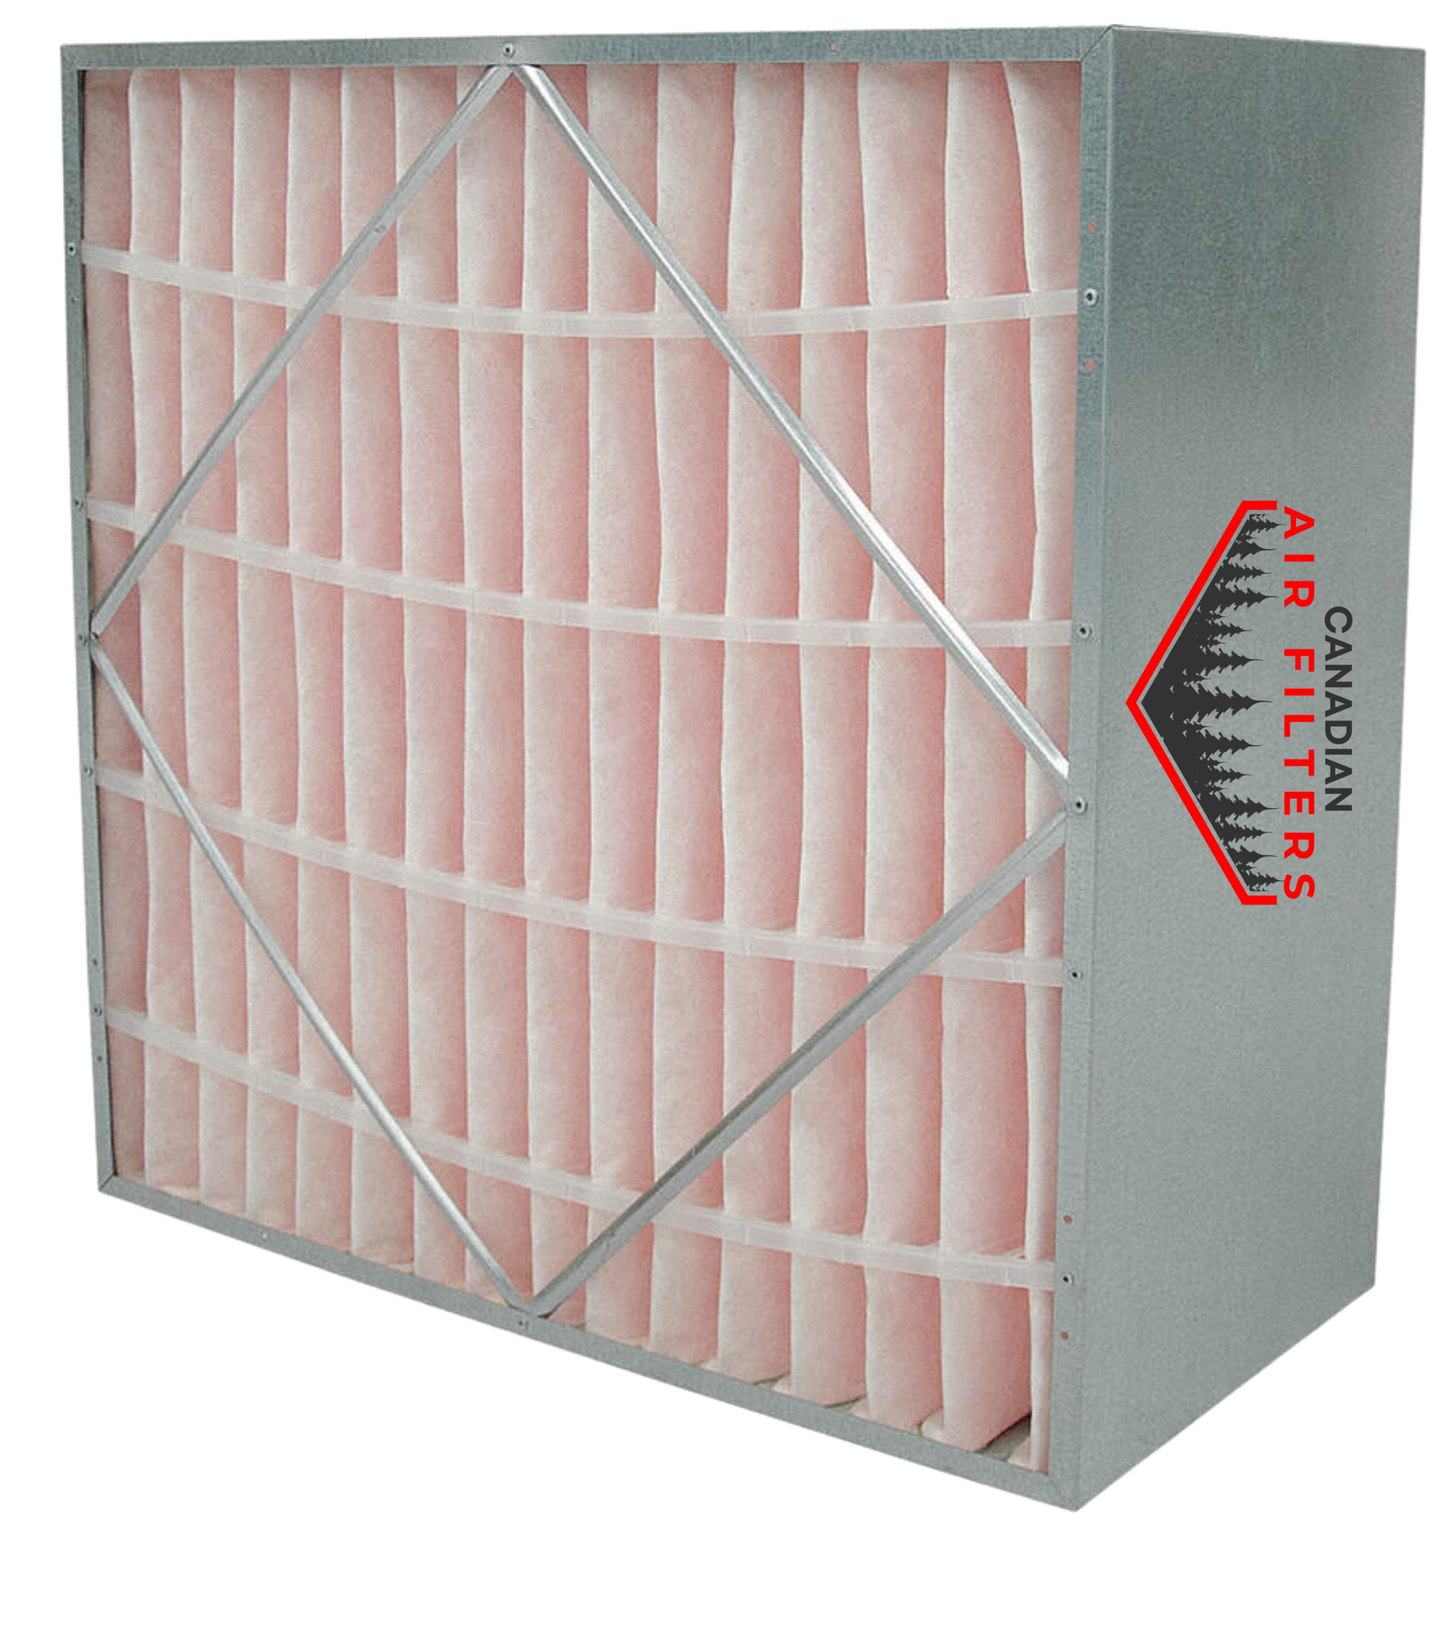 20 x 20 x 12 - Rigid Cell Air Filters Box Style - Merv 11 (Each)